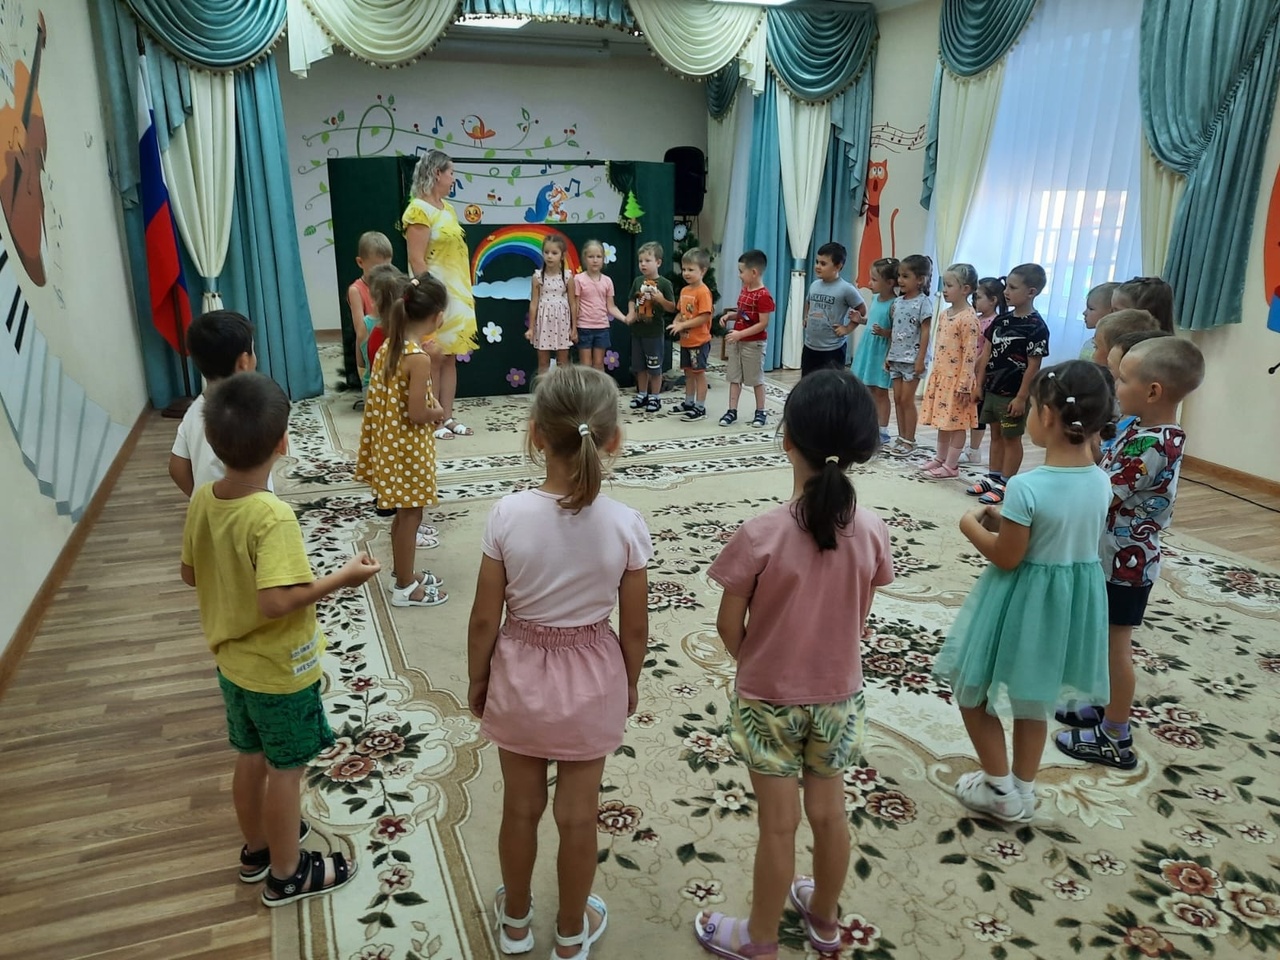 Кукольное представление по мотивам русской народной сказки "Колобок", но на новый лад